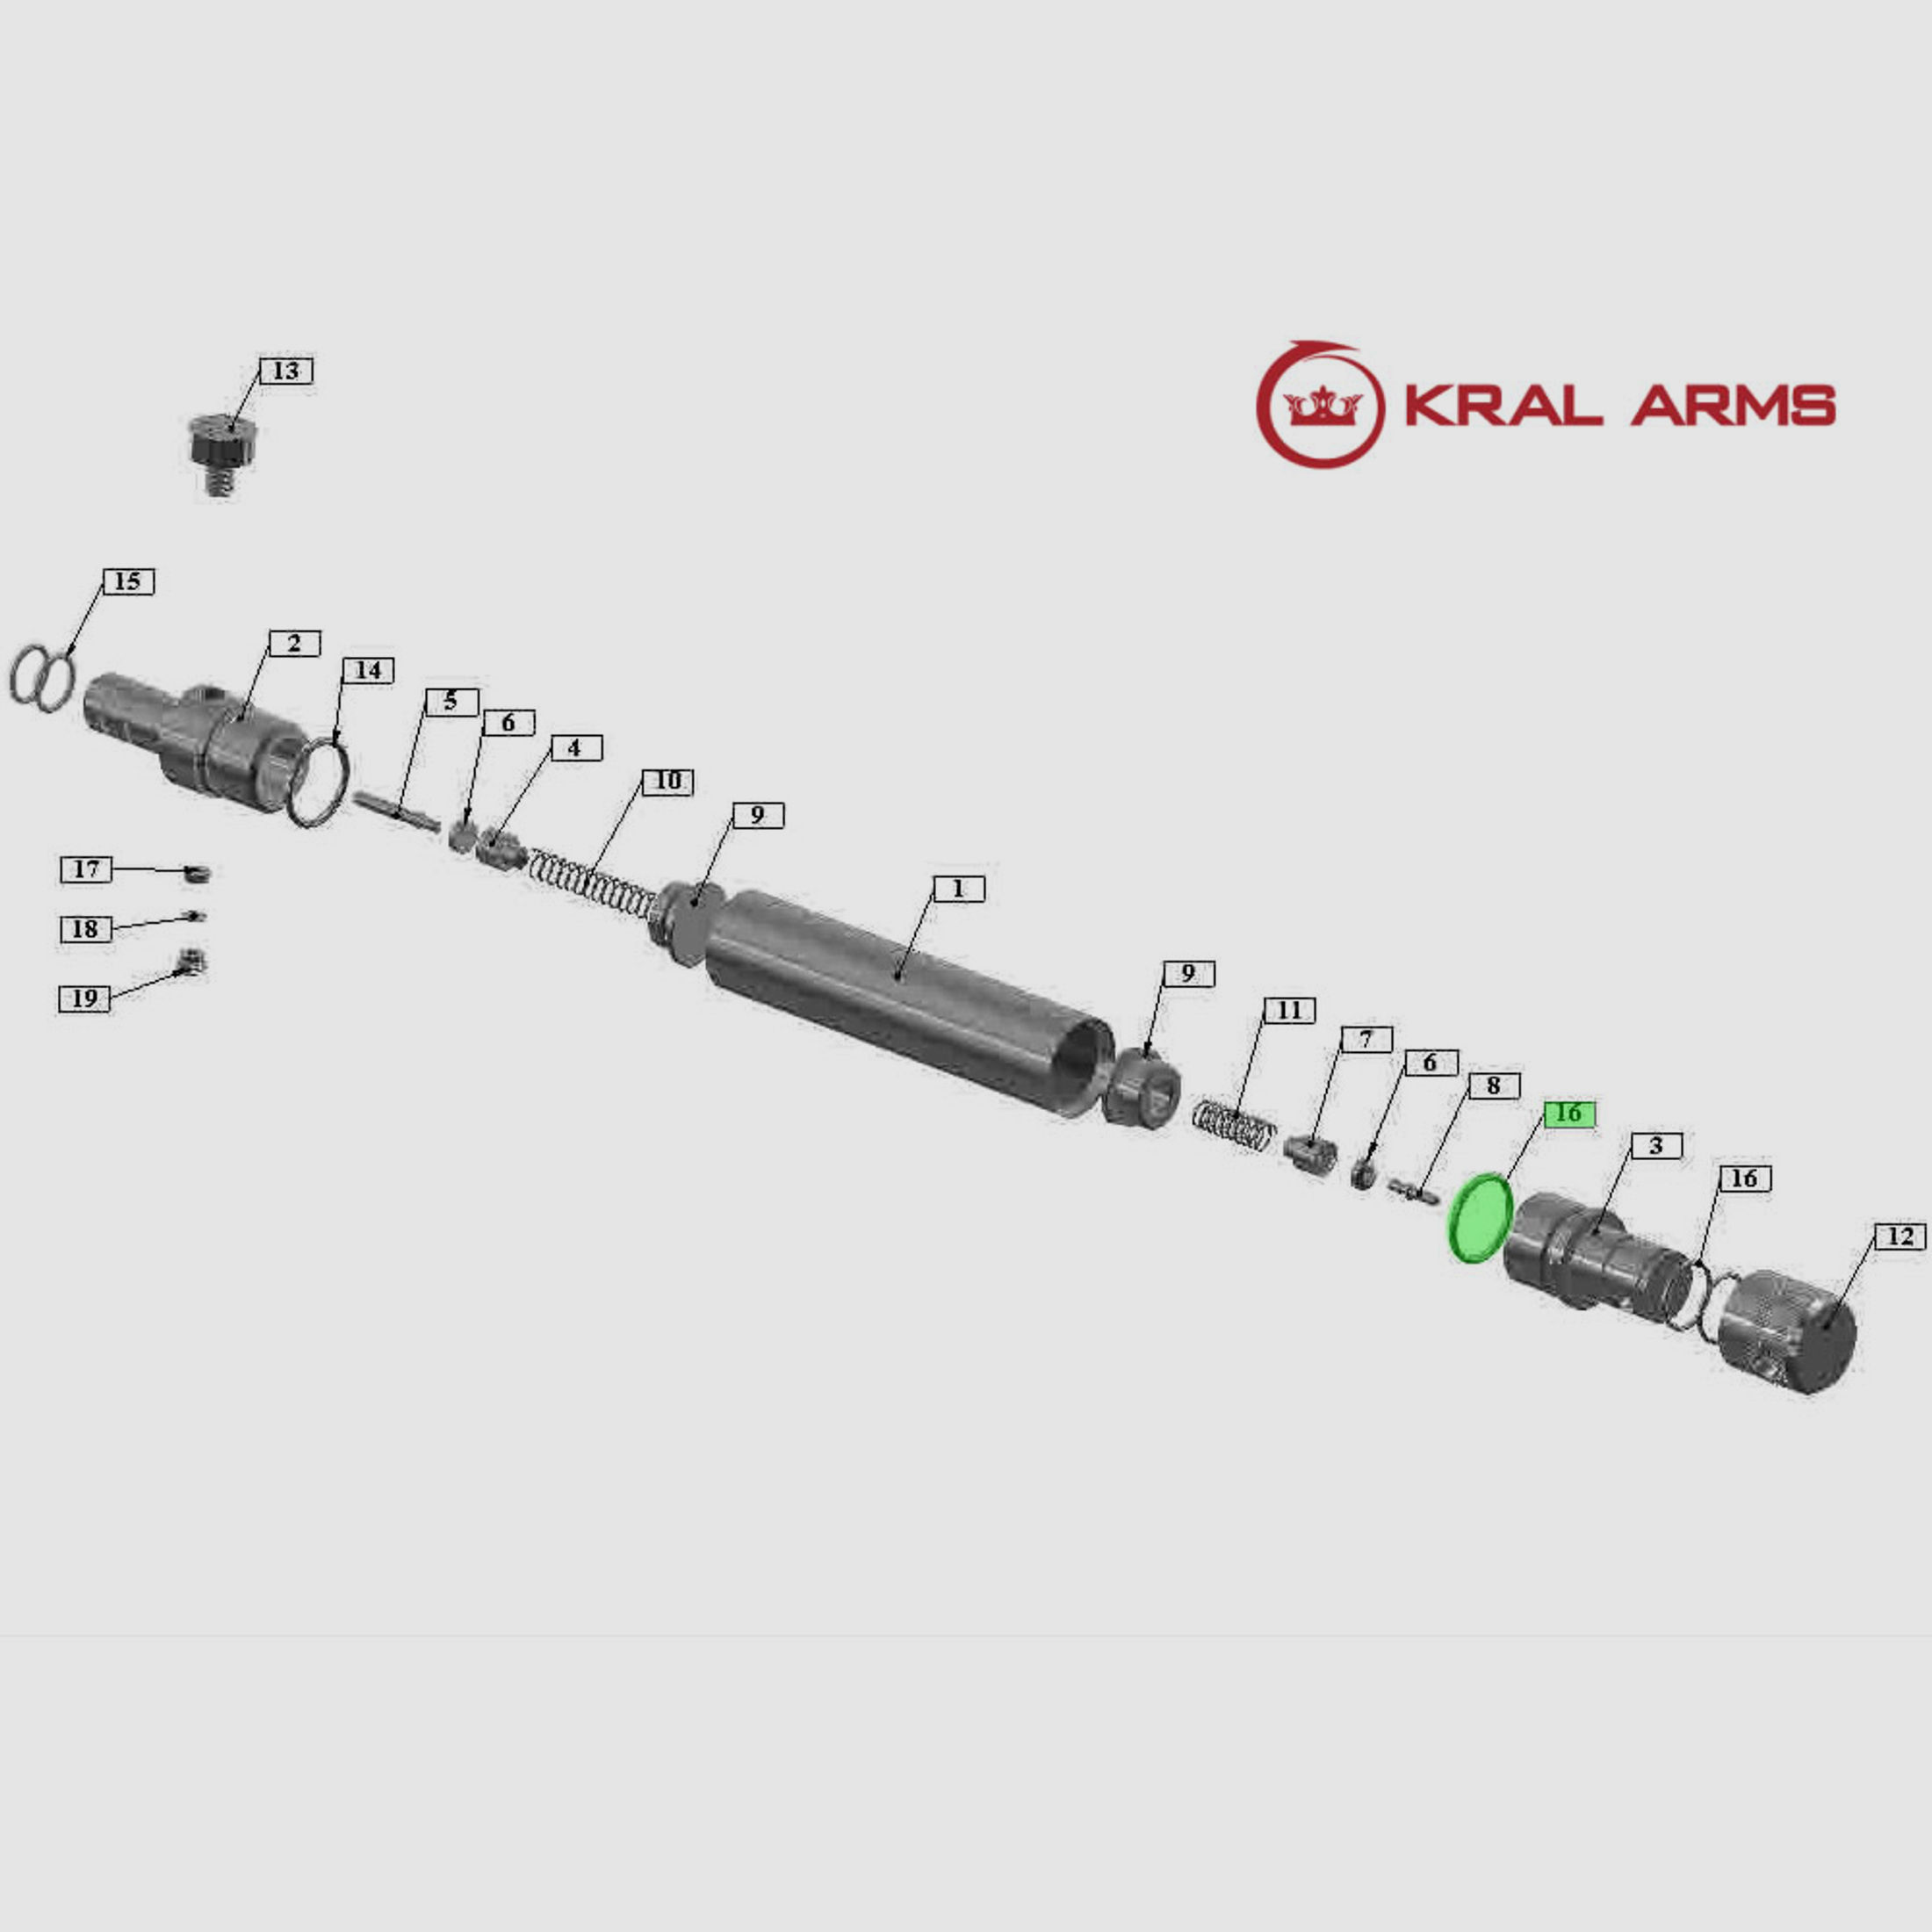 O-Ring FĂĽllseite Pressluftkartusche fĂĽr Pressluftgewehr Kral Arms Puncher NP-03 Carbine Kaliber 4,5 mm, Ersatzteile